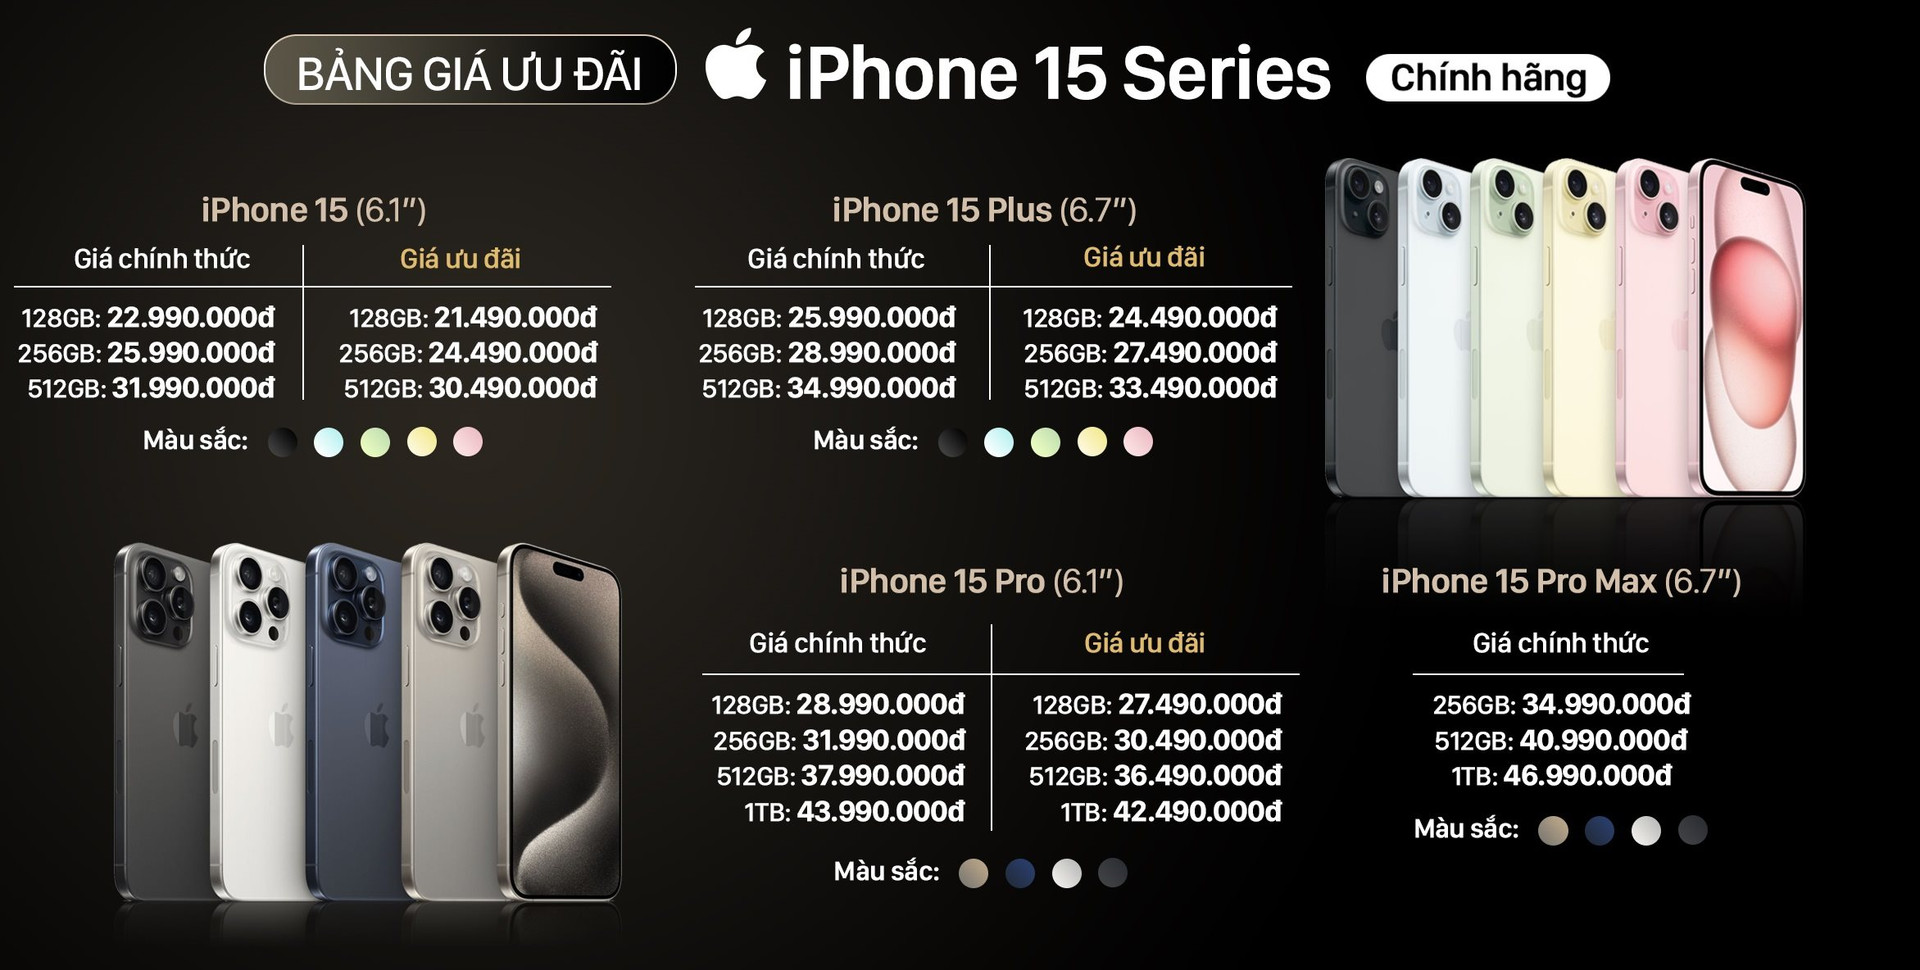 iPhone 15 series như lên đồng tại Việt Nam, nhiều đại lý nhận đơn đặt cọc “khủng” - Ảnh 4.